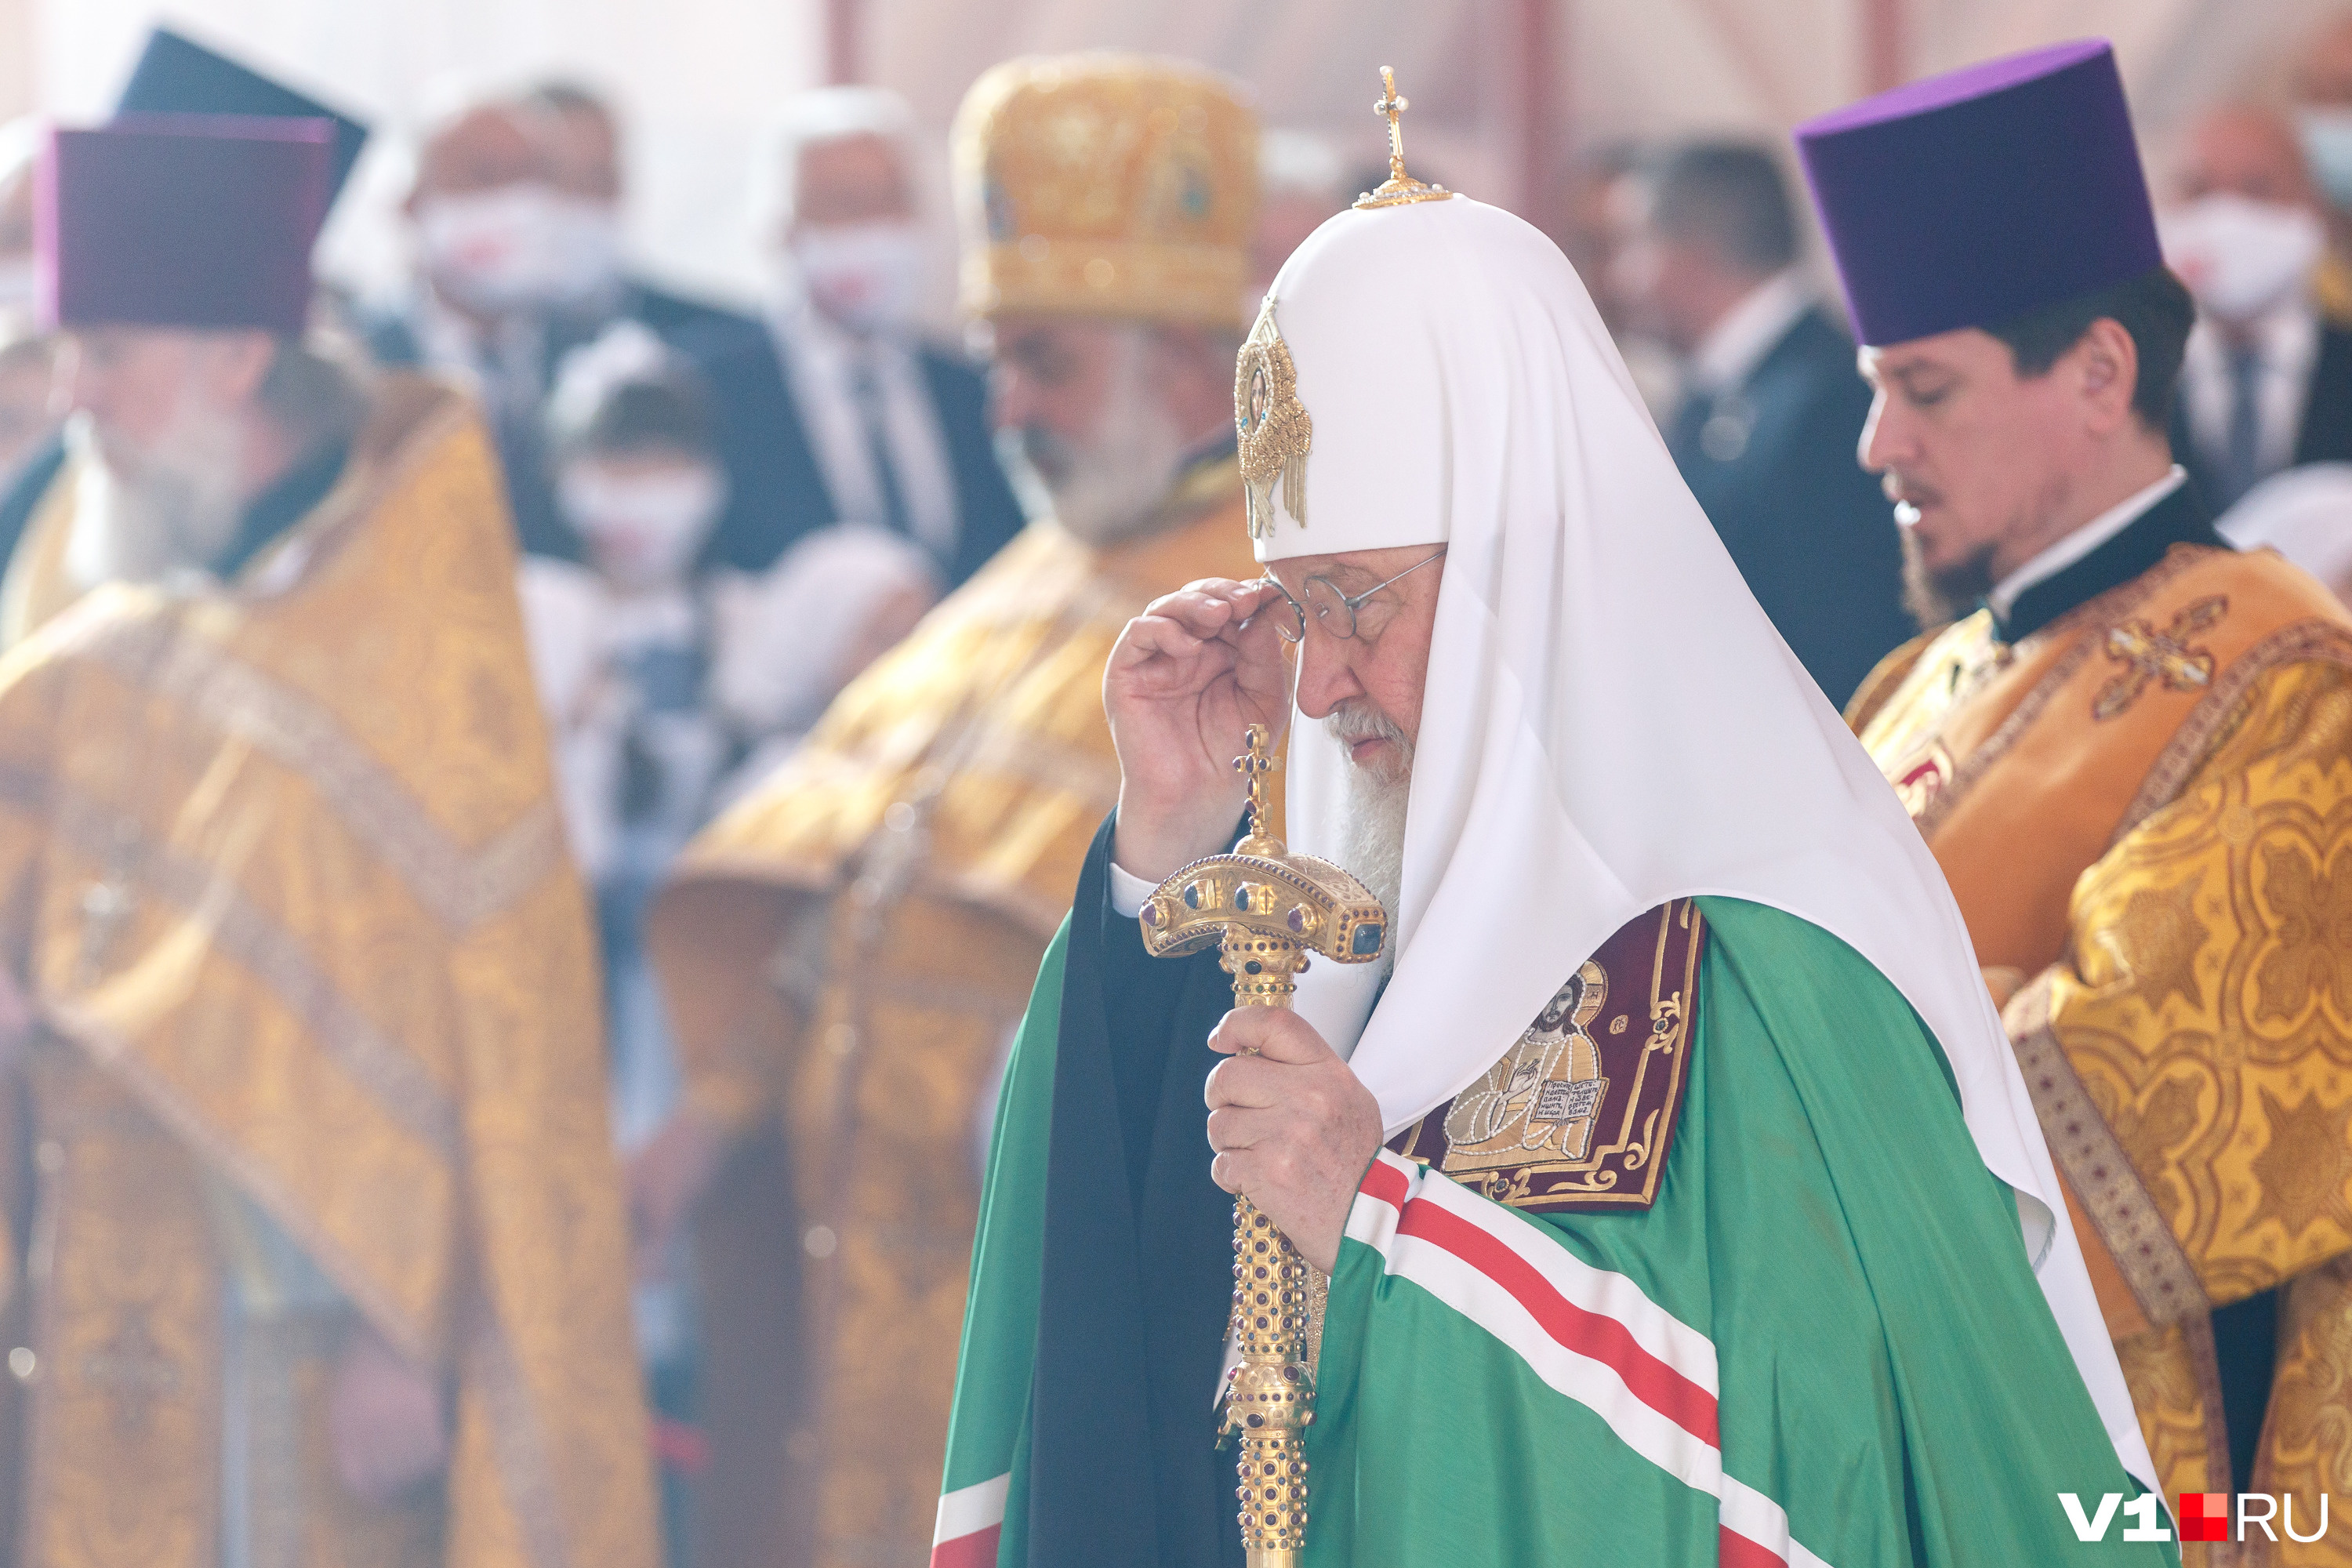 Послание патриарха опубликовано на сайте Русской православной церкви